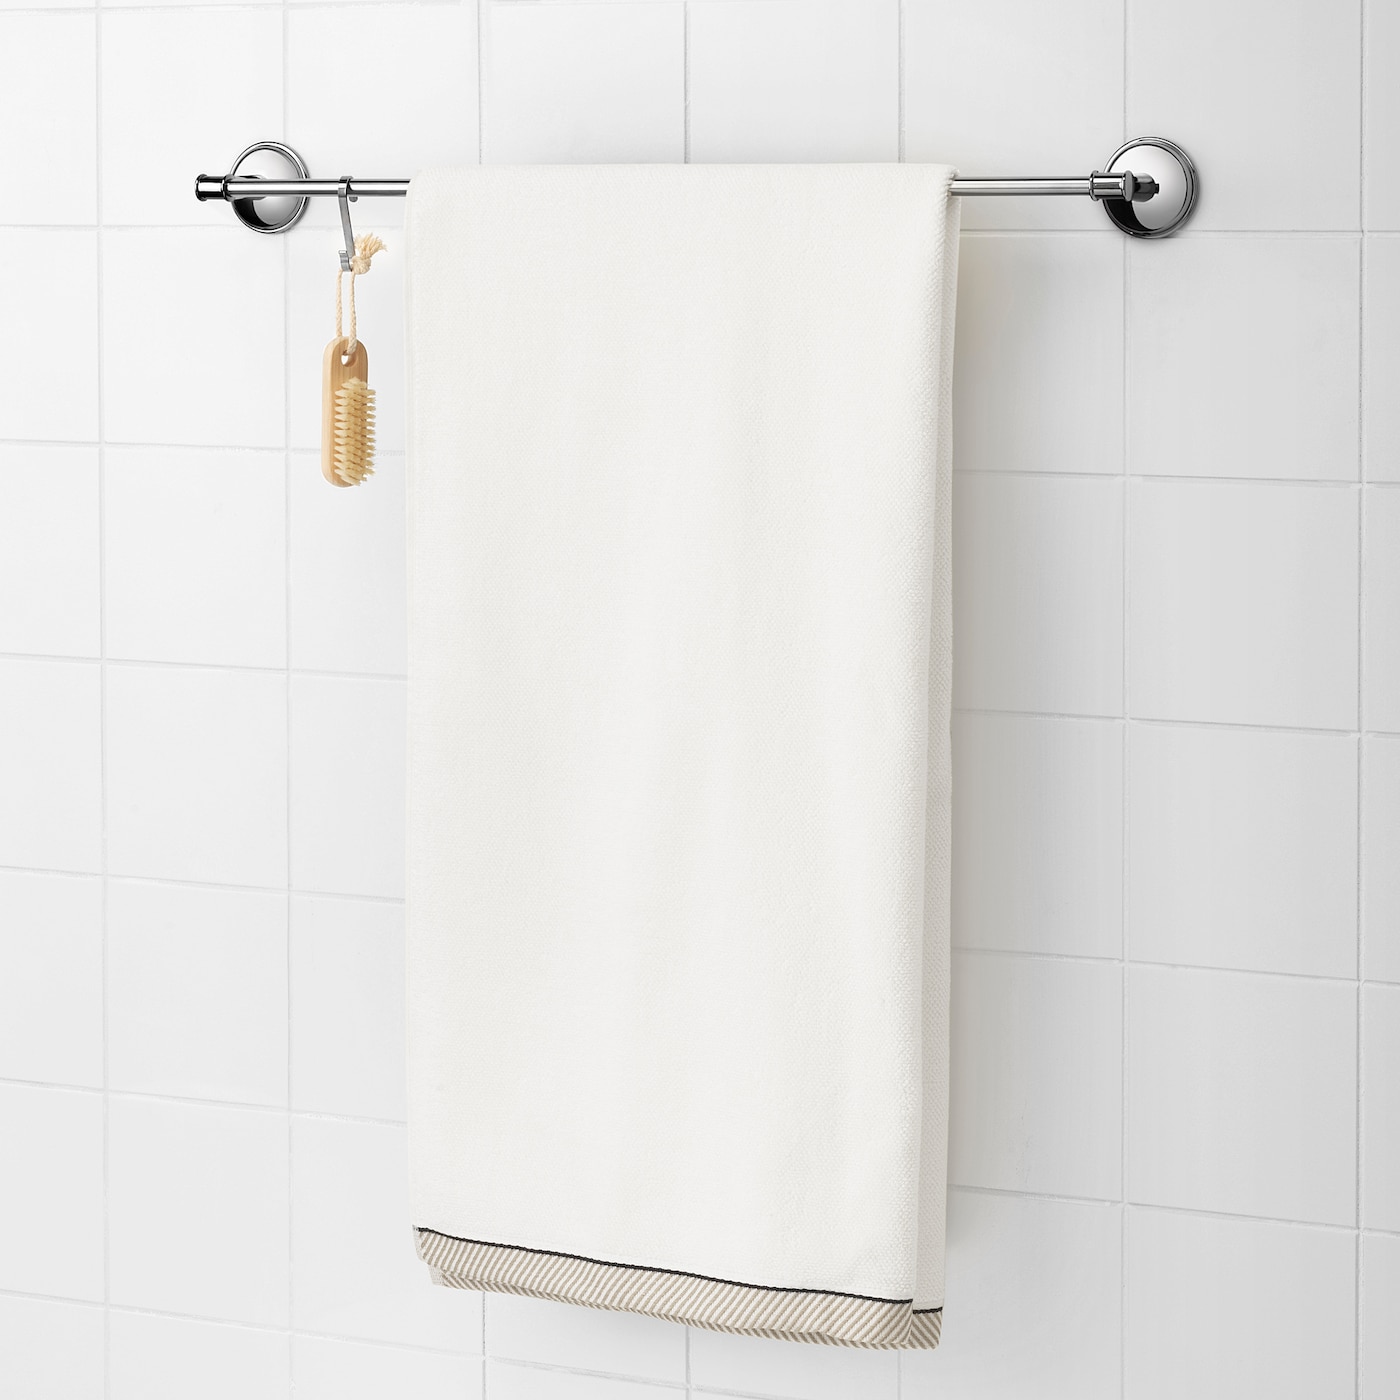 Черные полотенца для ванной. Викфьерд полотенце икеа. Икеа белое банное полотенце. Белое банное полотенце 70х140. Стандартное белое полотенце икеа 70x140.